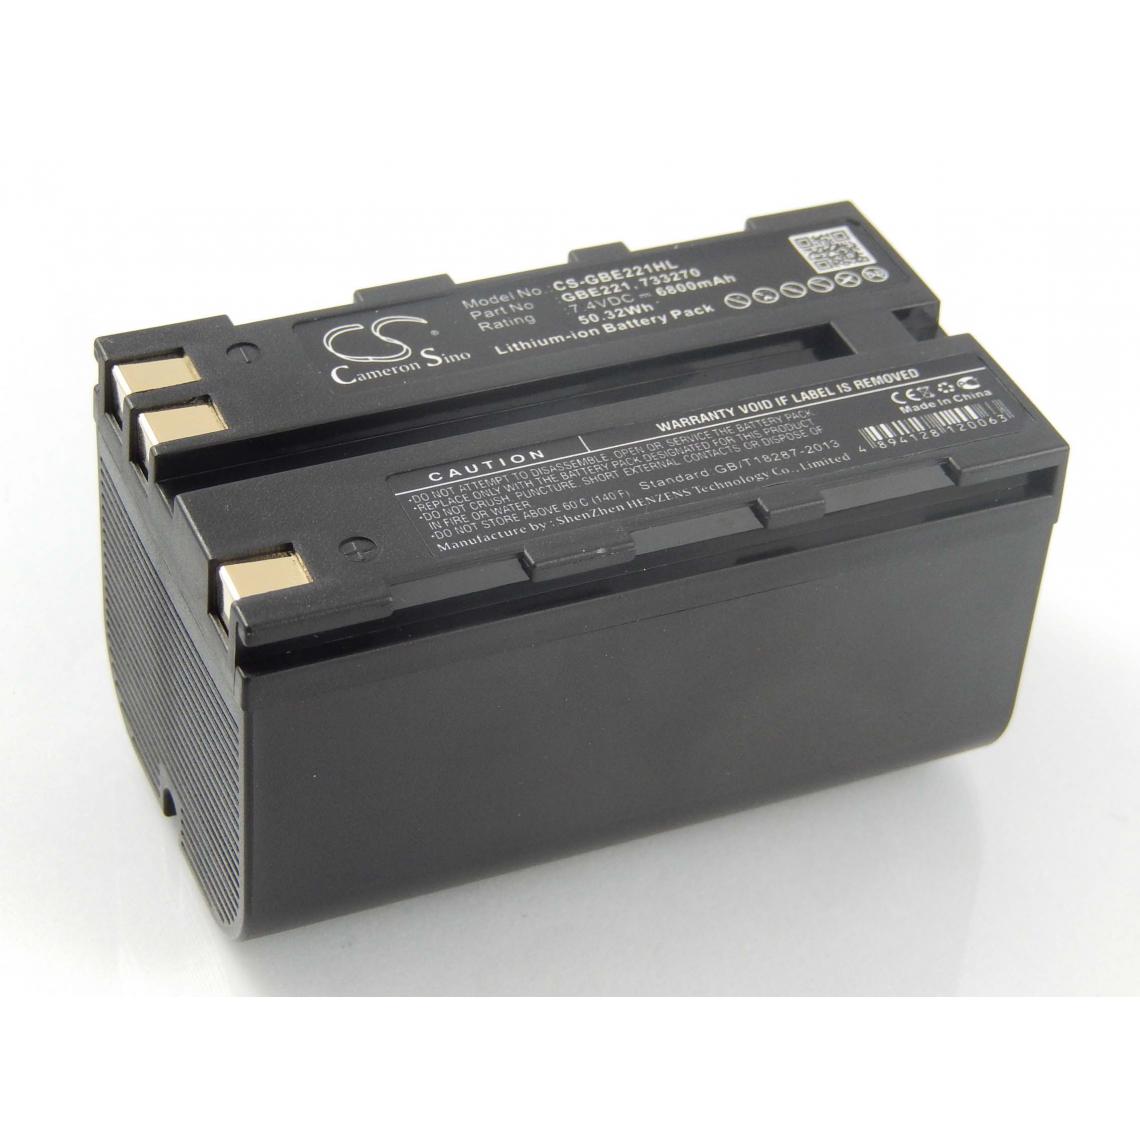 Vhbw - vhbw Batterie remplacement pour Leica GEB212, GEB221, GEB90 pour dispositif de mesure laser, outil de mesure (6800mAh, 7,4V, Li-ion) - Piles rechargeables